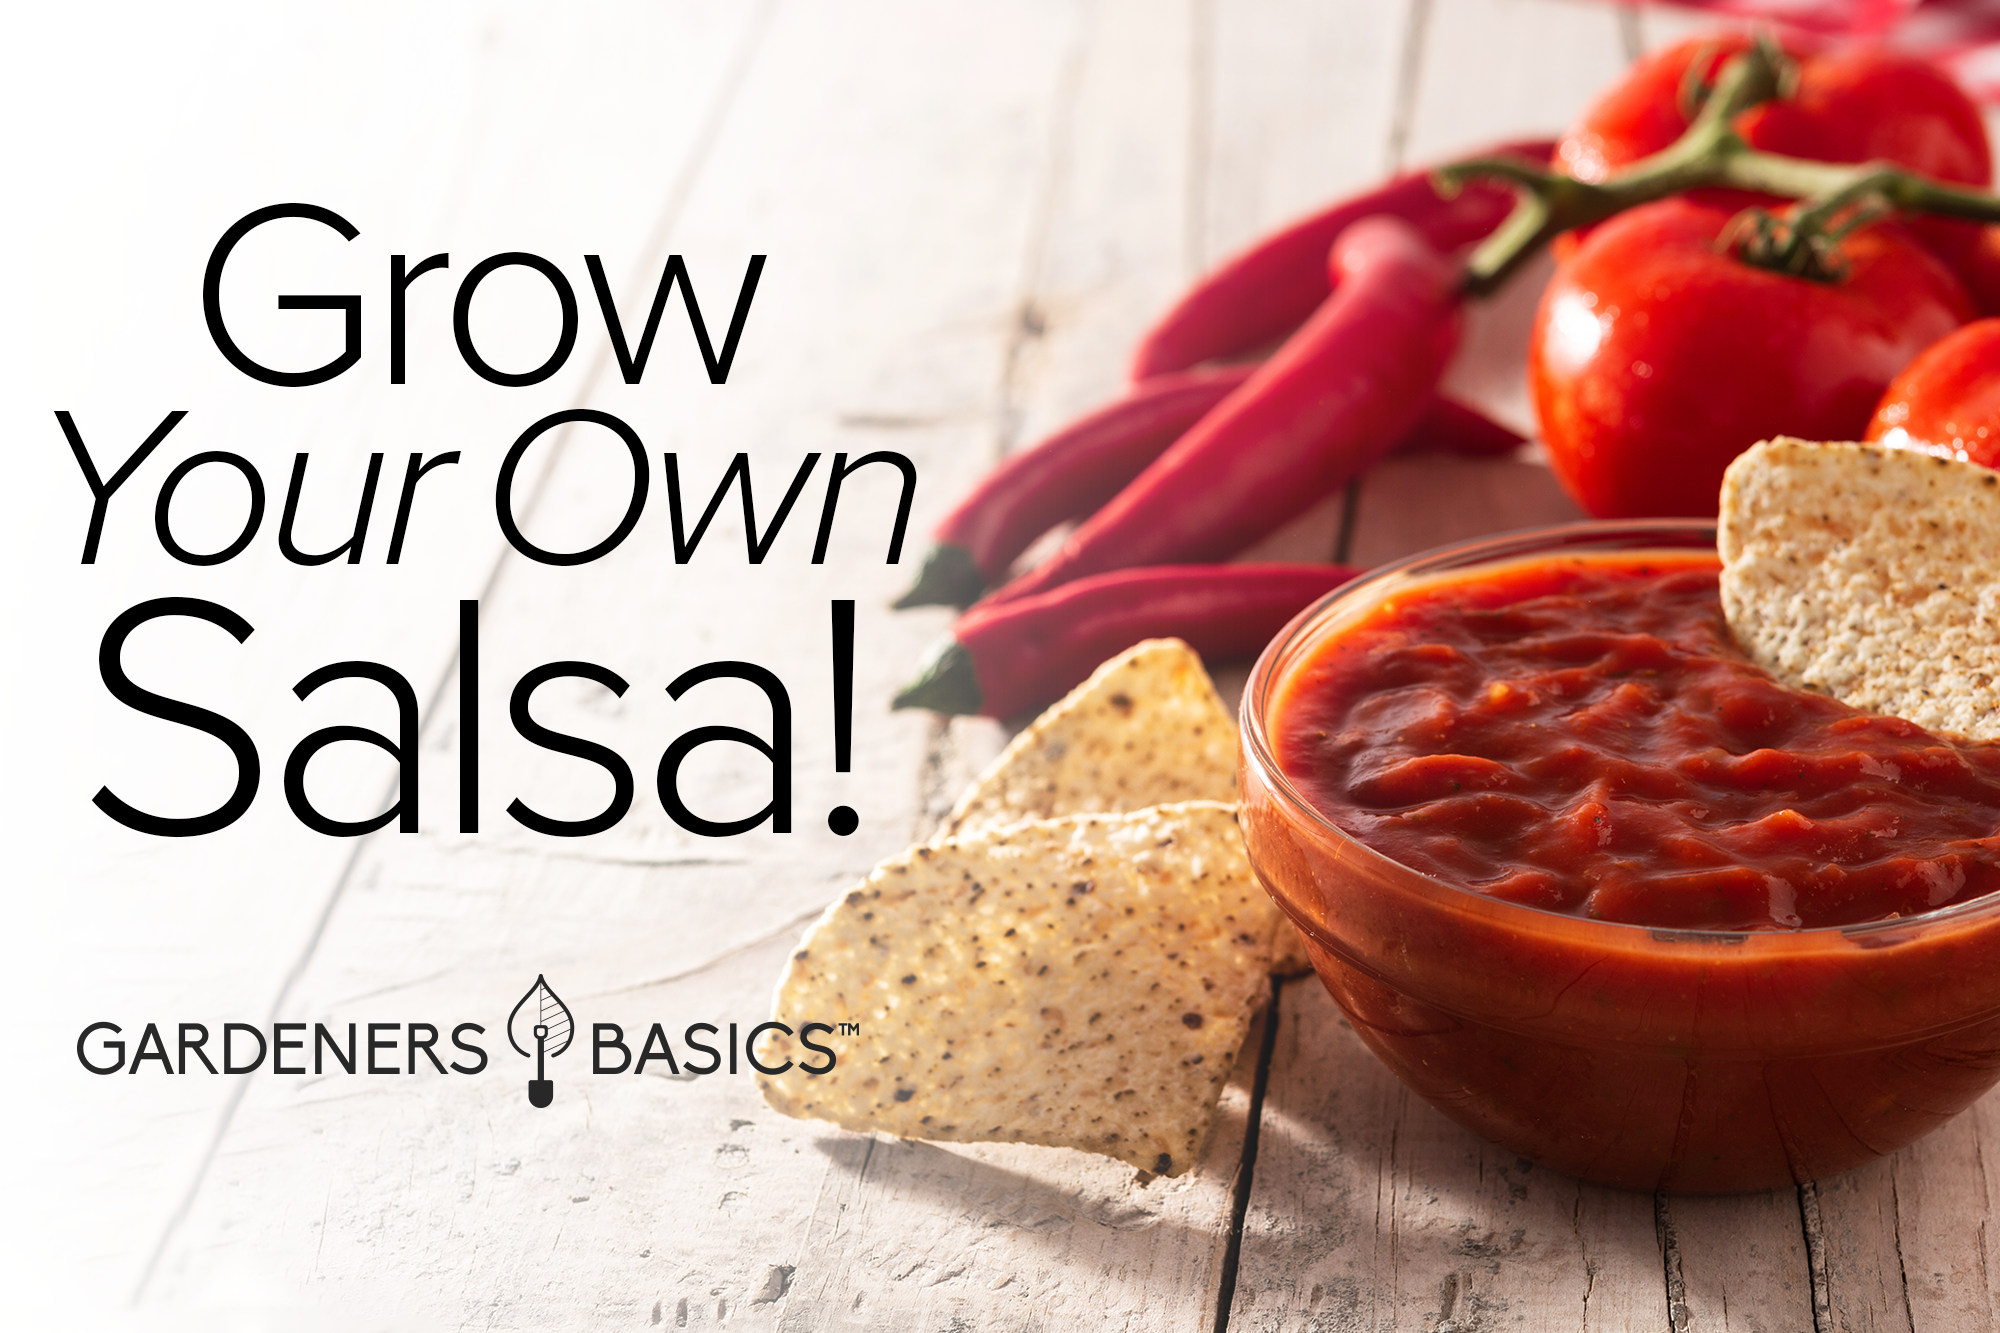 Mexican Salsa Vegetable Garden Starter Kit - Non-GMO Salsa Seeds